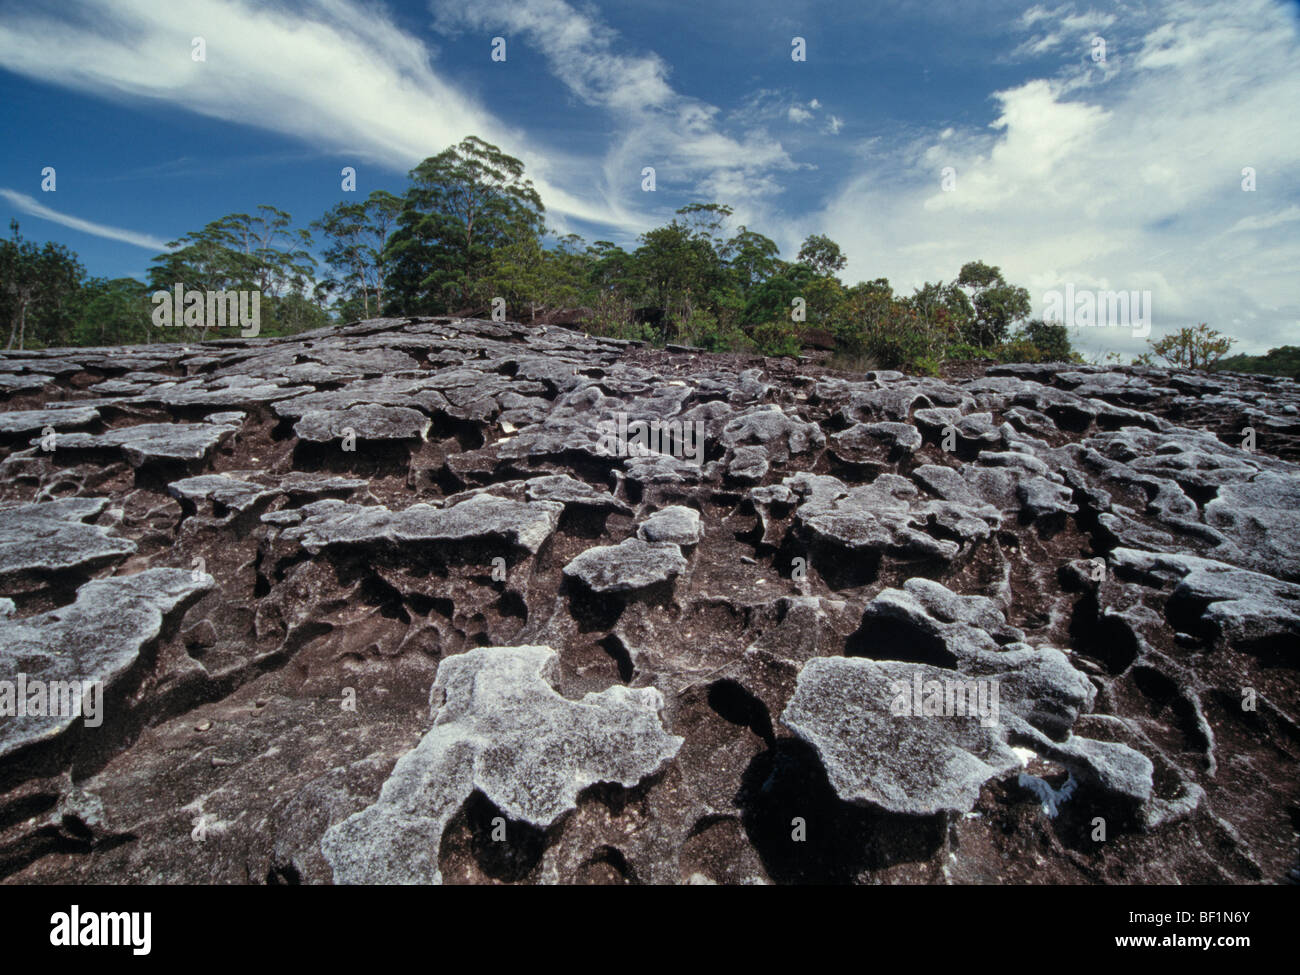 La Malesia, Borneo sarawak, Bako National Park, secco Coral reef, Foto Stock